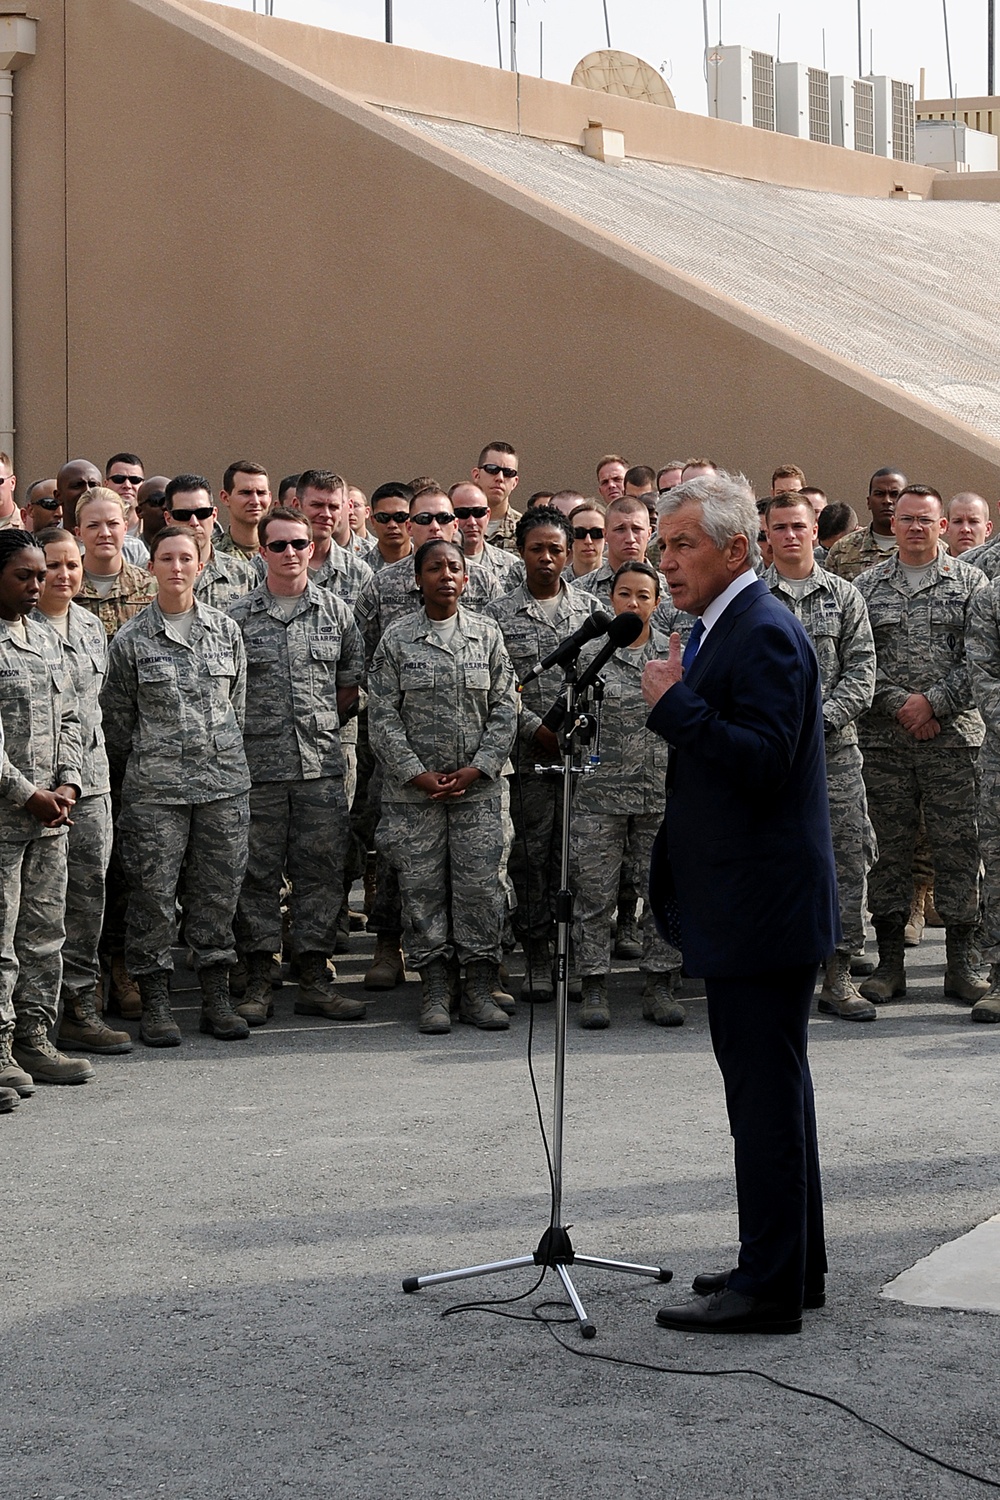 Hagel speaks to deployed troops